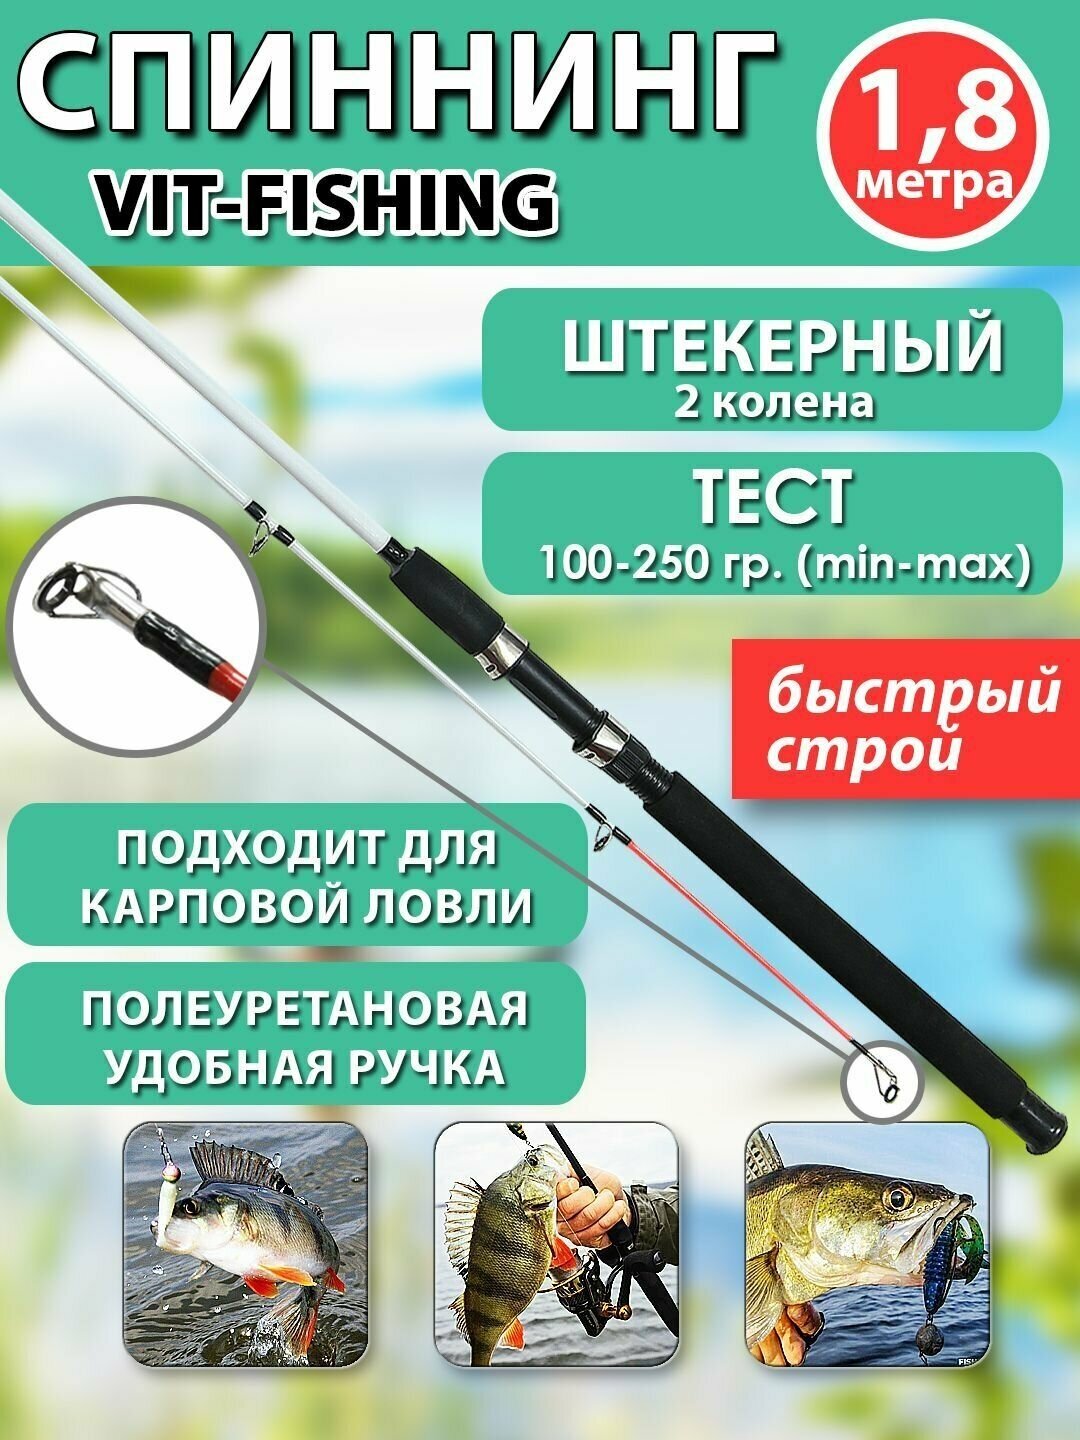 Спиннинг фидерный VITFISHING штекерный 2 колена 1.8 м для летней рыбалки белый быстрый строй тест 100-250